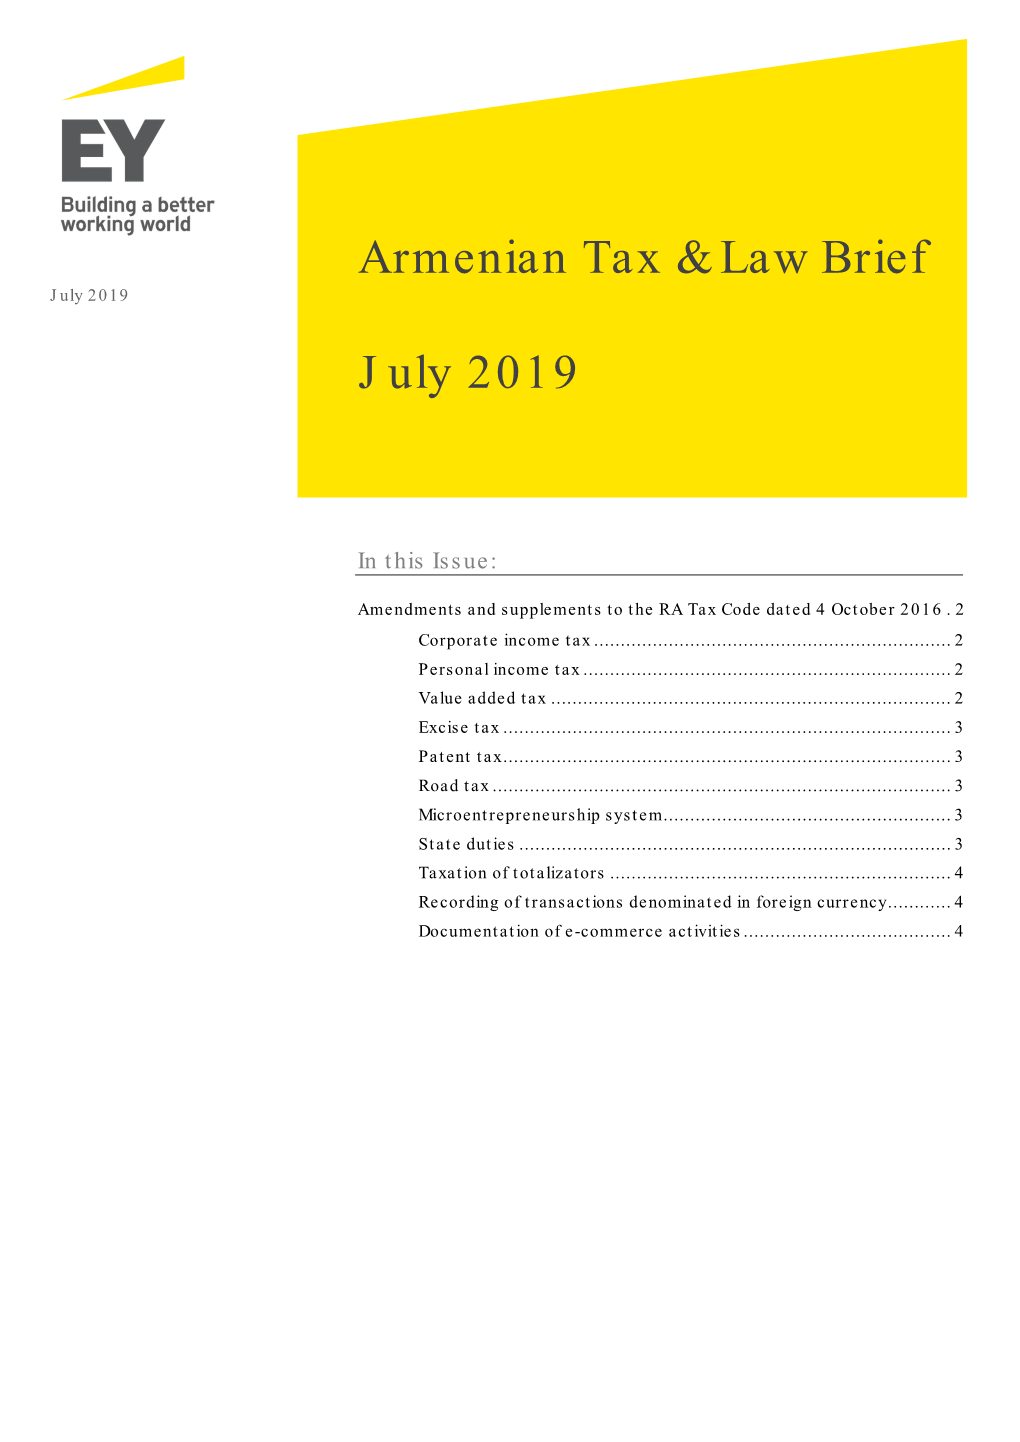 Armenian Tax & Law Brief July 2019